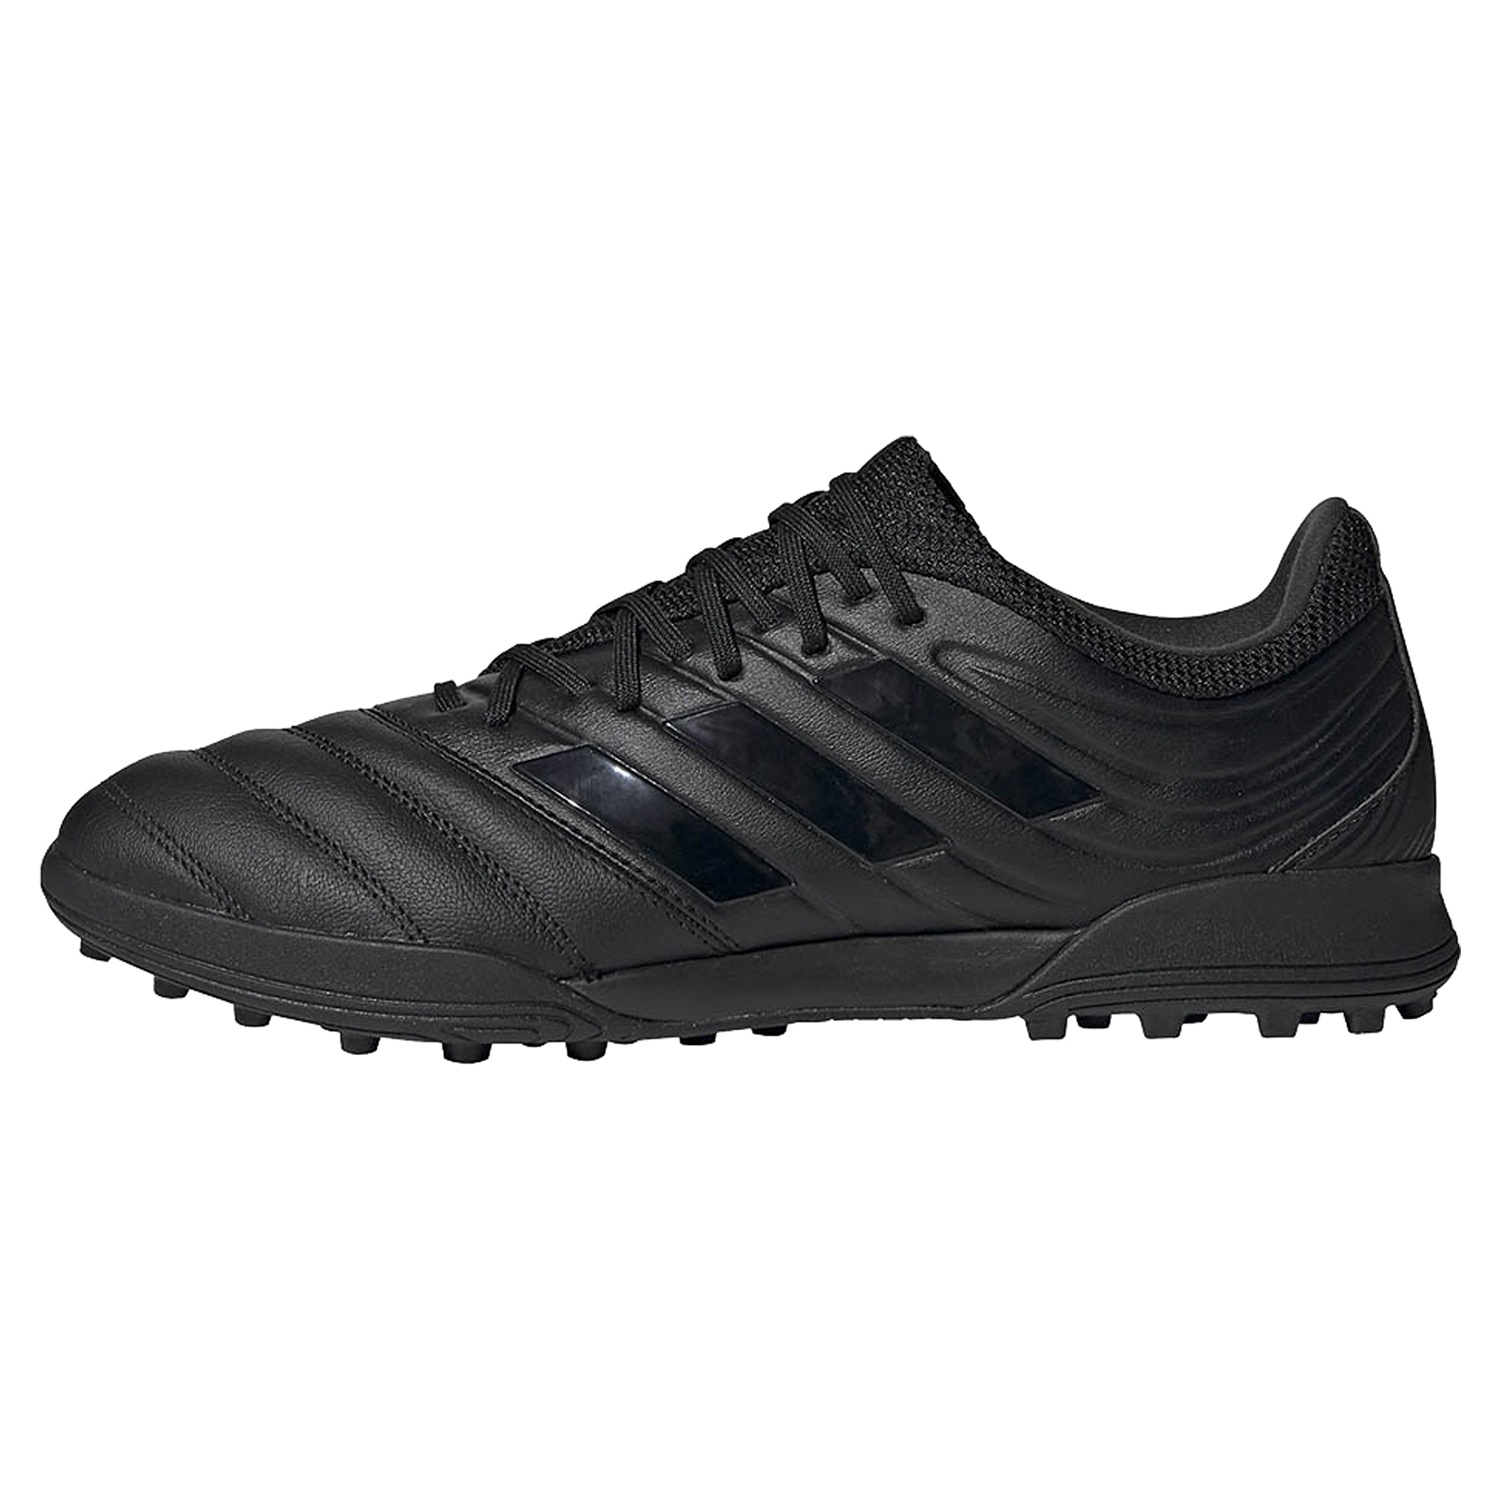 نکته خرید - قیمت روز کفش فوتبال مردانه آدیداس مدل G28532 خرید